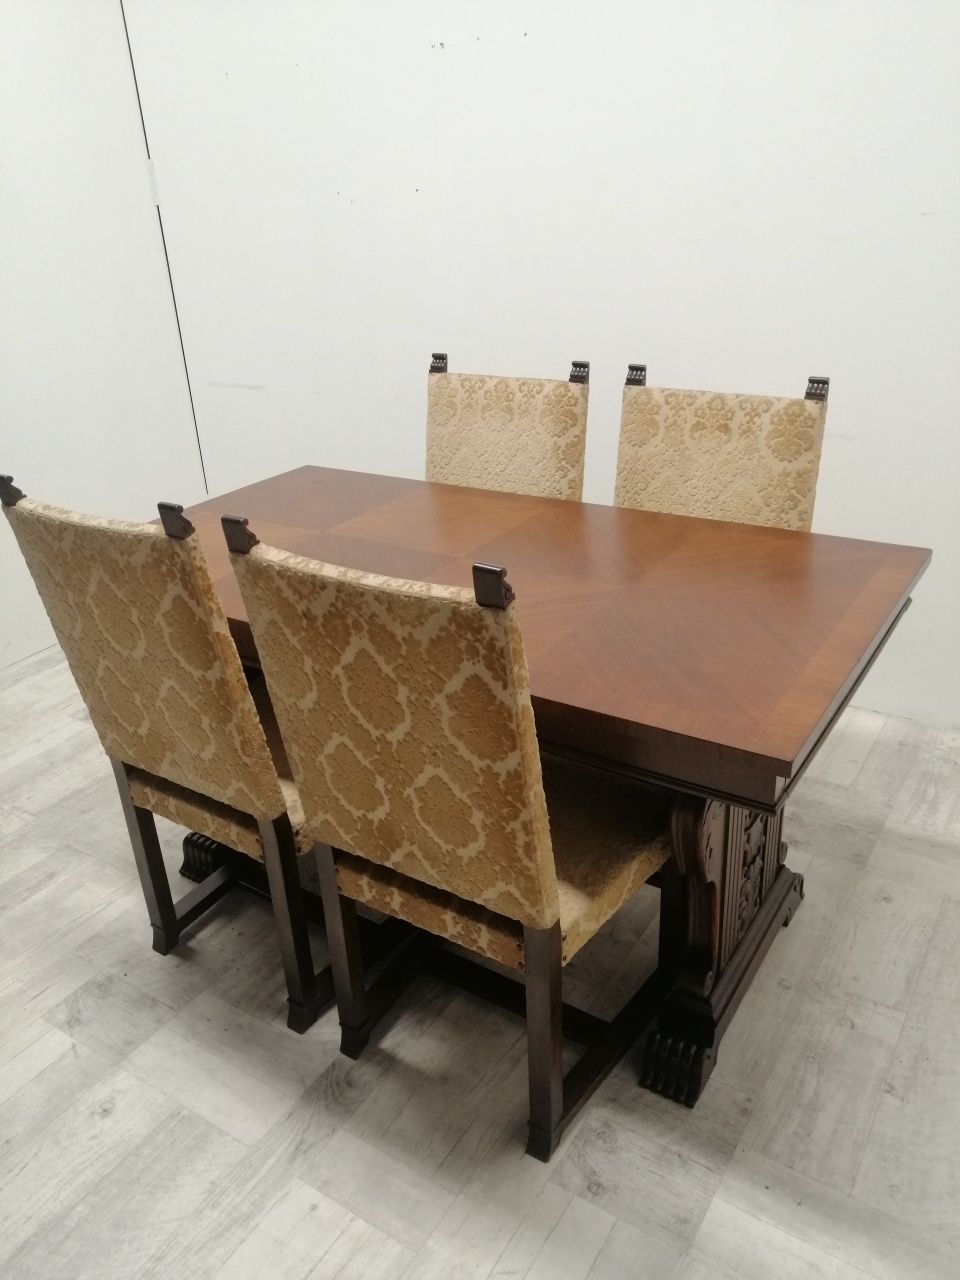 Antyczny stół z krzesłami orzech do salonu jadalni lub jako biurko.